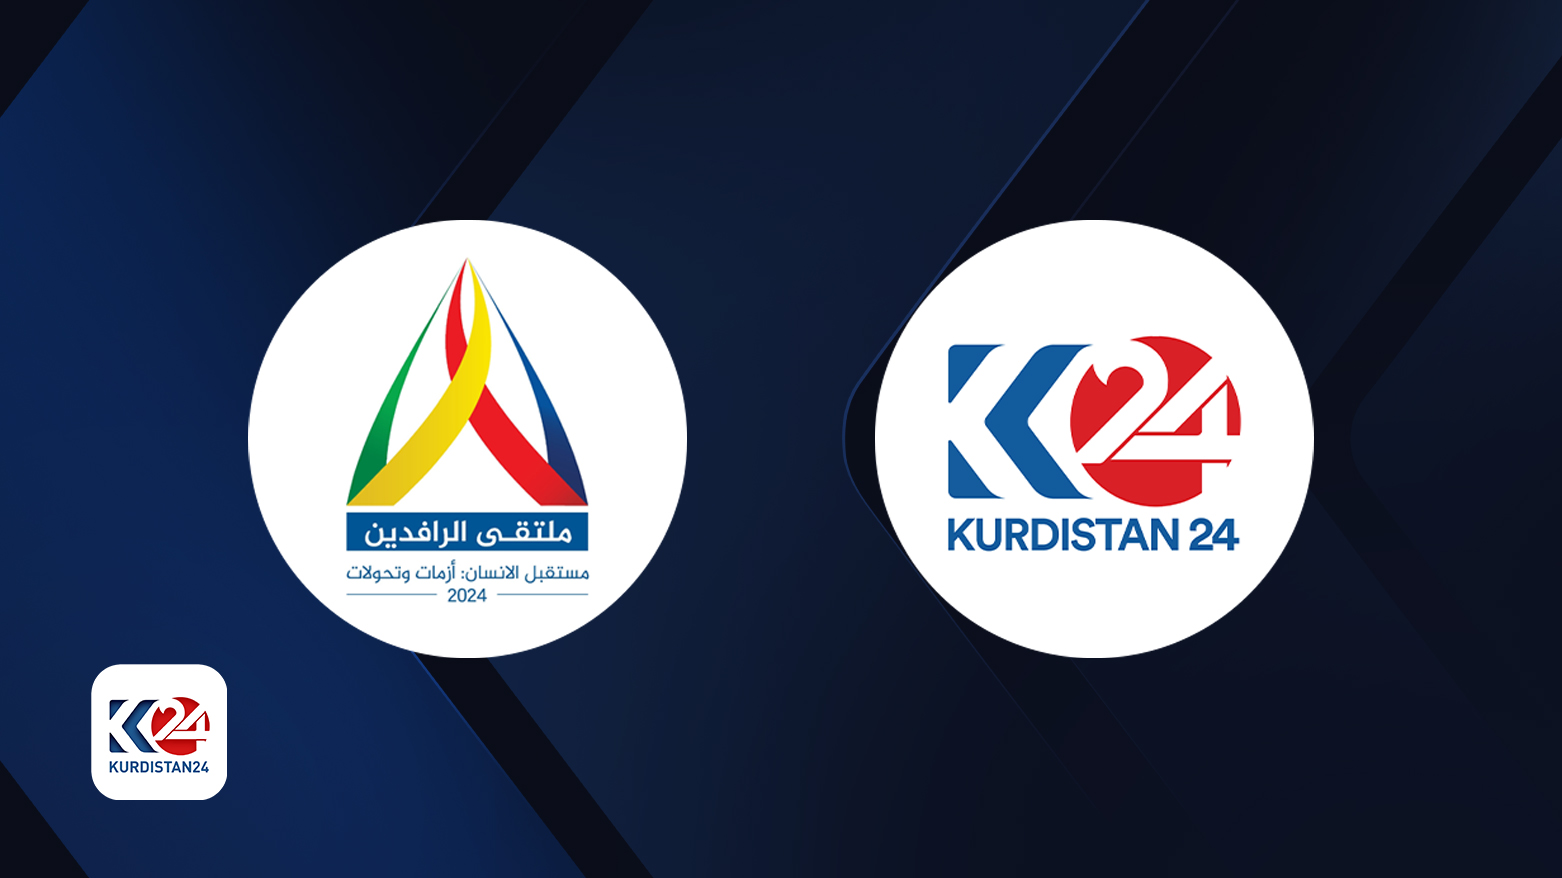 Rafideyn Forumu, Kurdistan24 sponsorluğunda gerçekleşecek